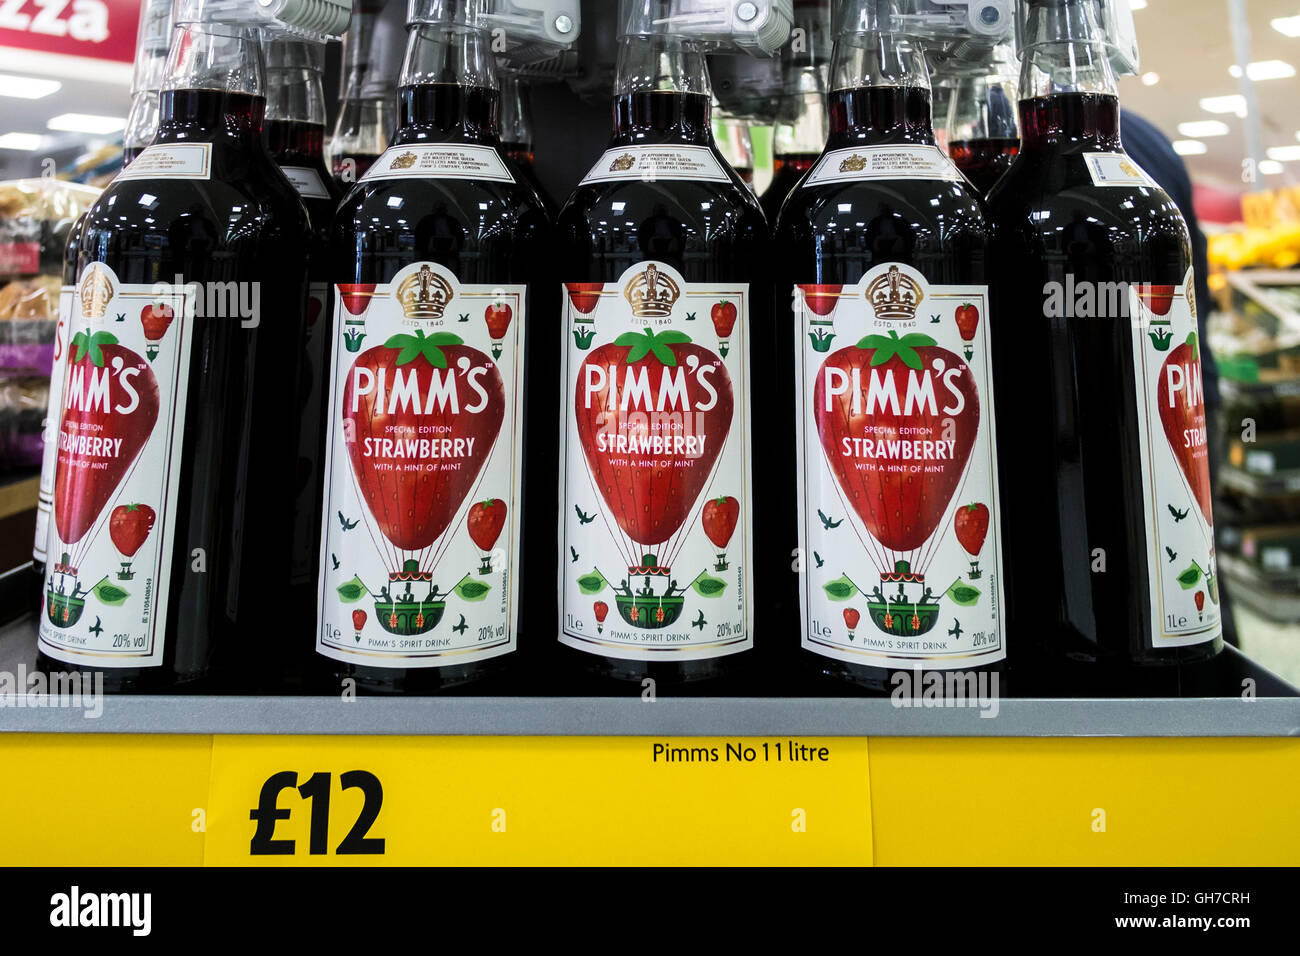 Une exposition de bouteilles de PIMMS special edition Strawberry dans un supermarché.. Banque D'Images